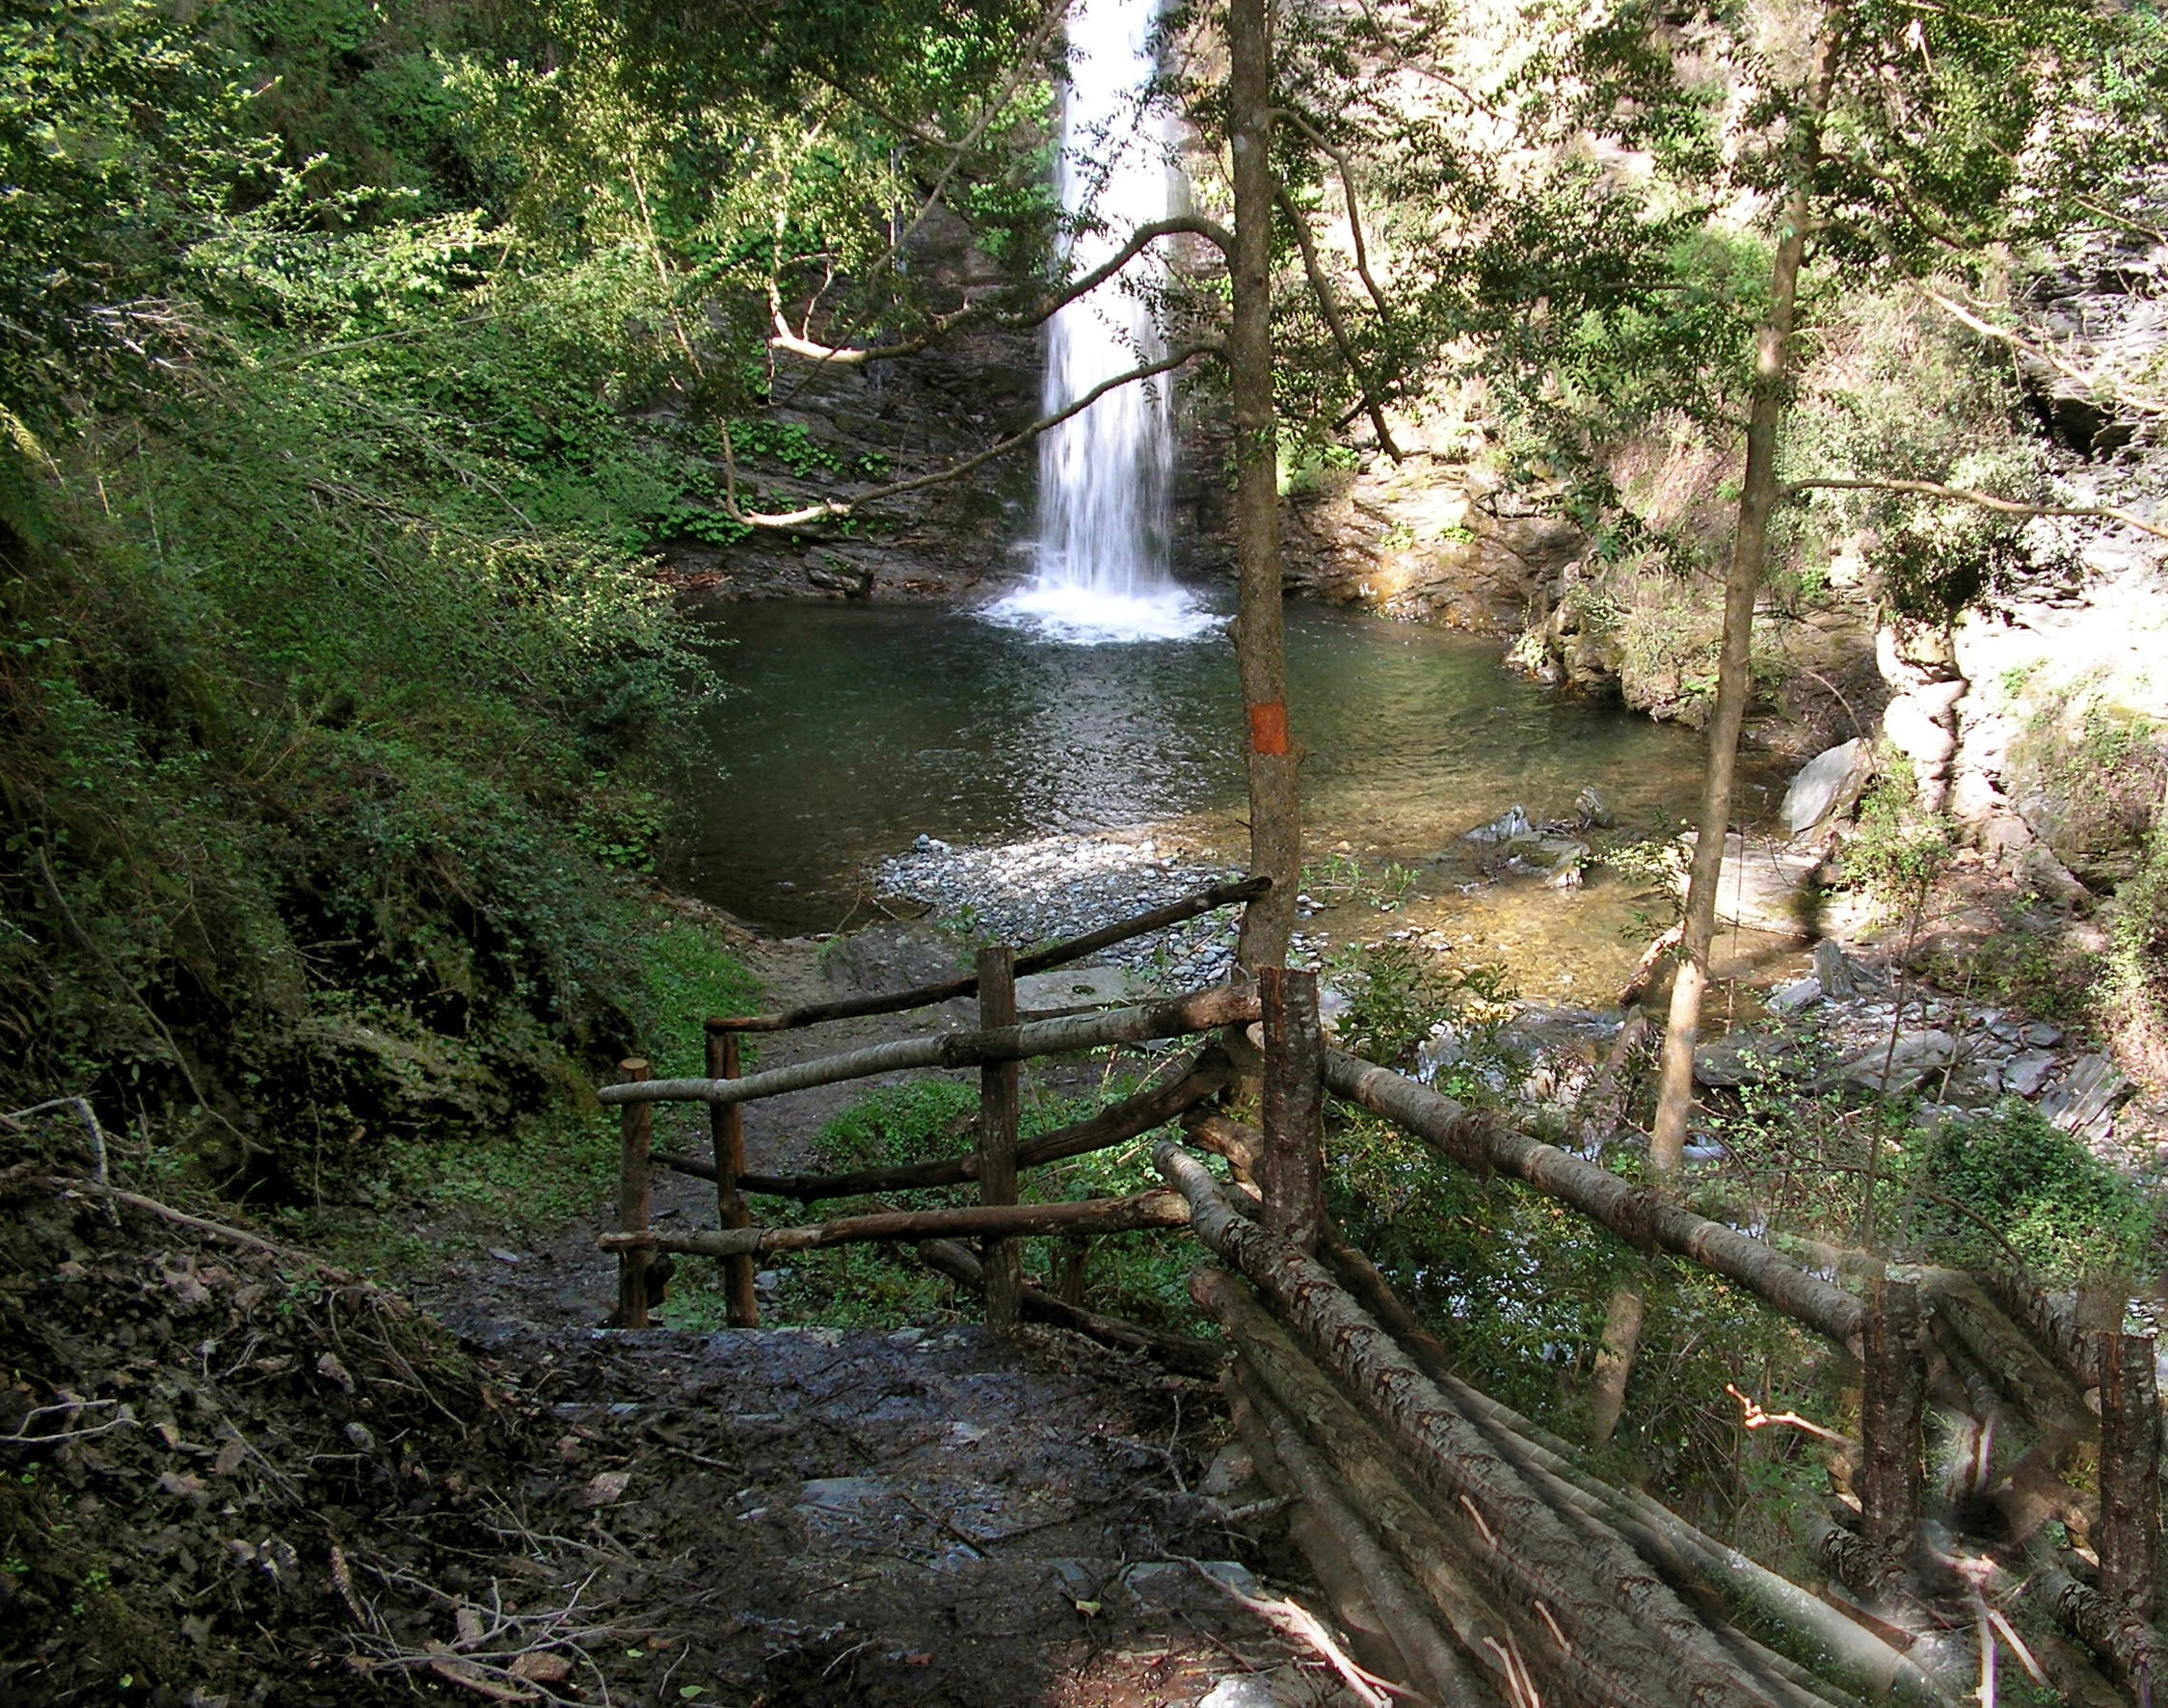 La cascade de la Struccia à Carchetu-Brusticu